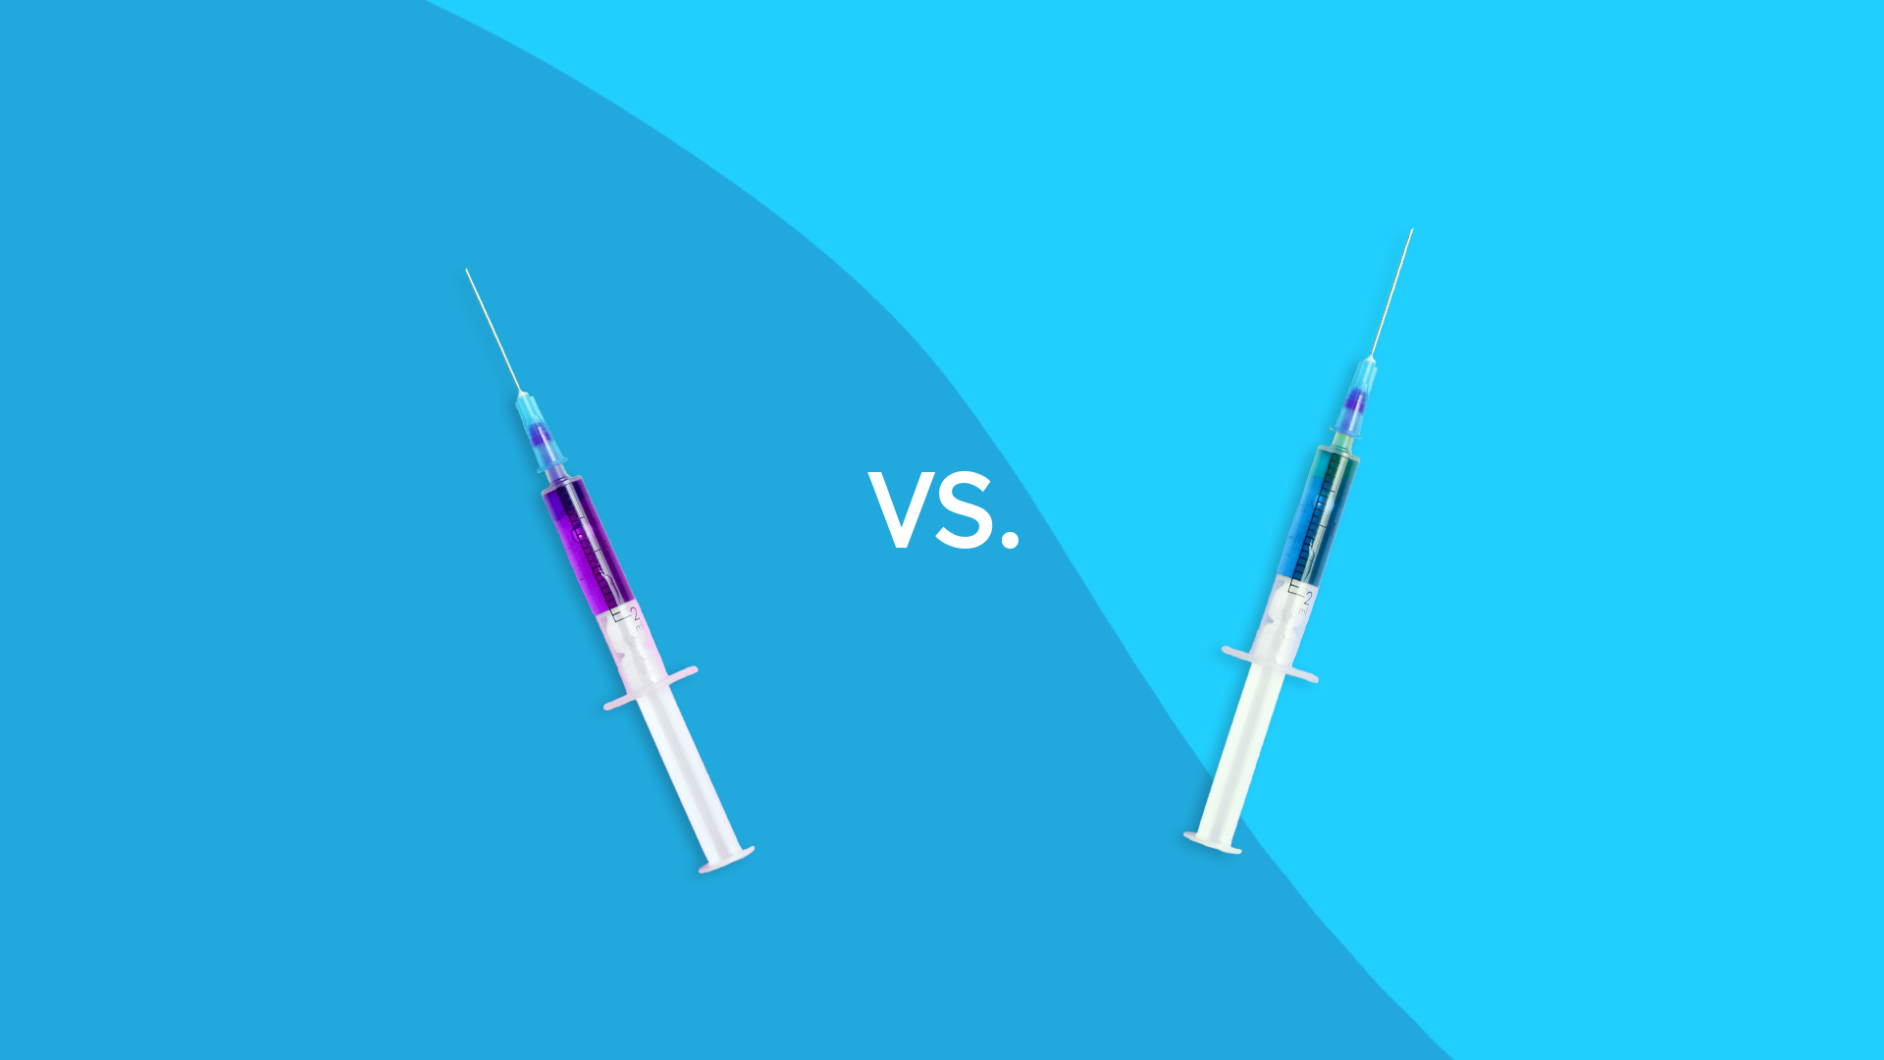 Prevnar 13 vs Pneumovax 23 vaccine comparison